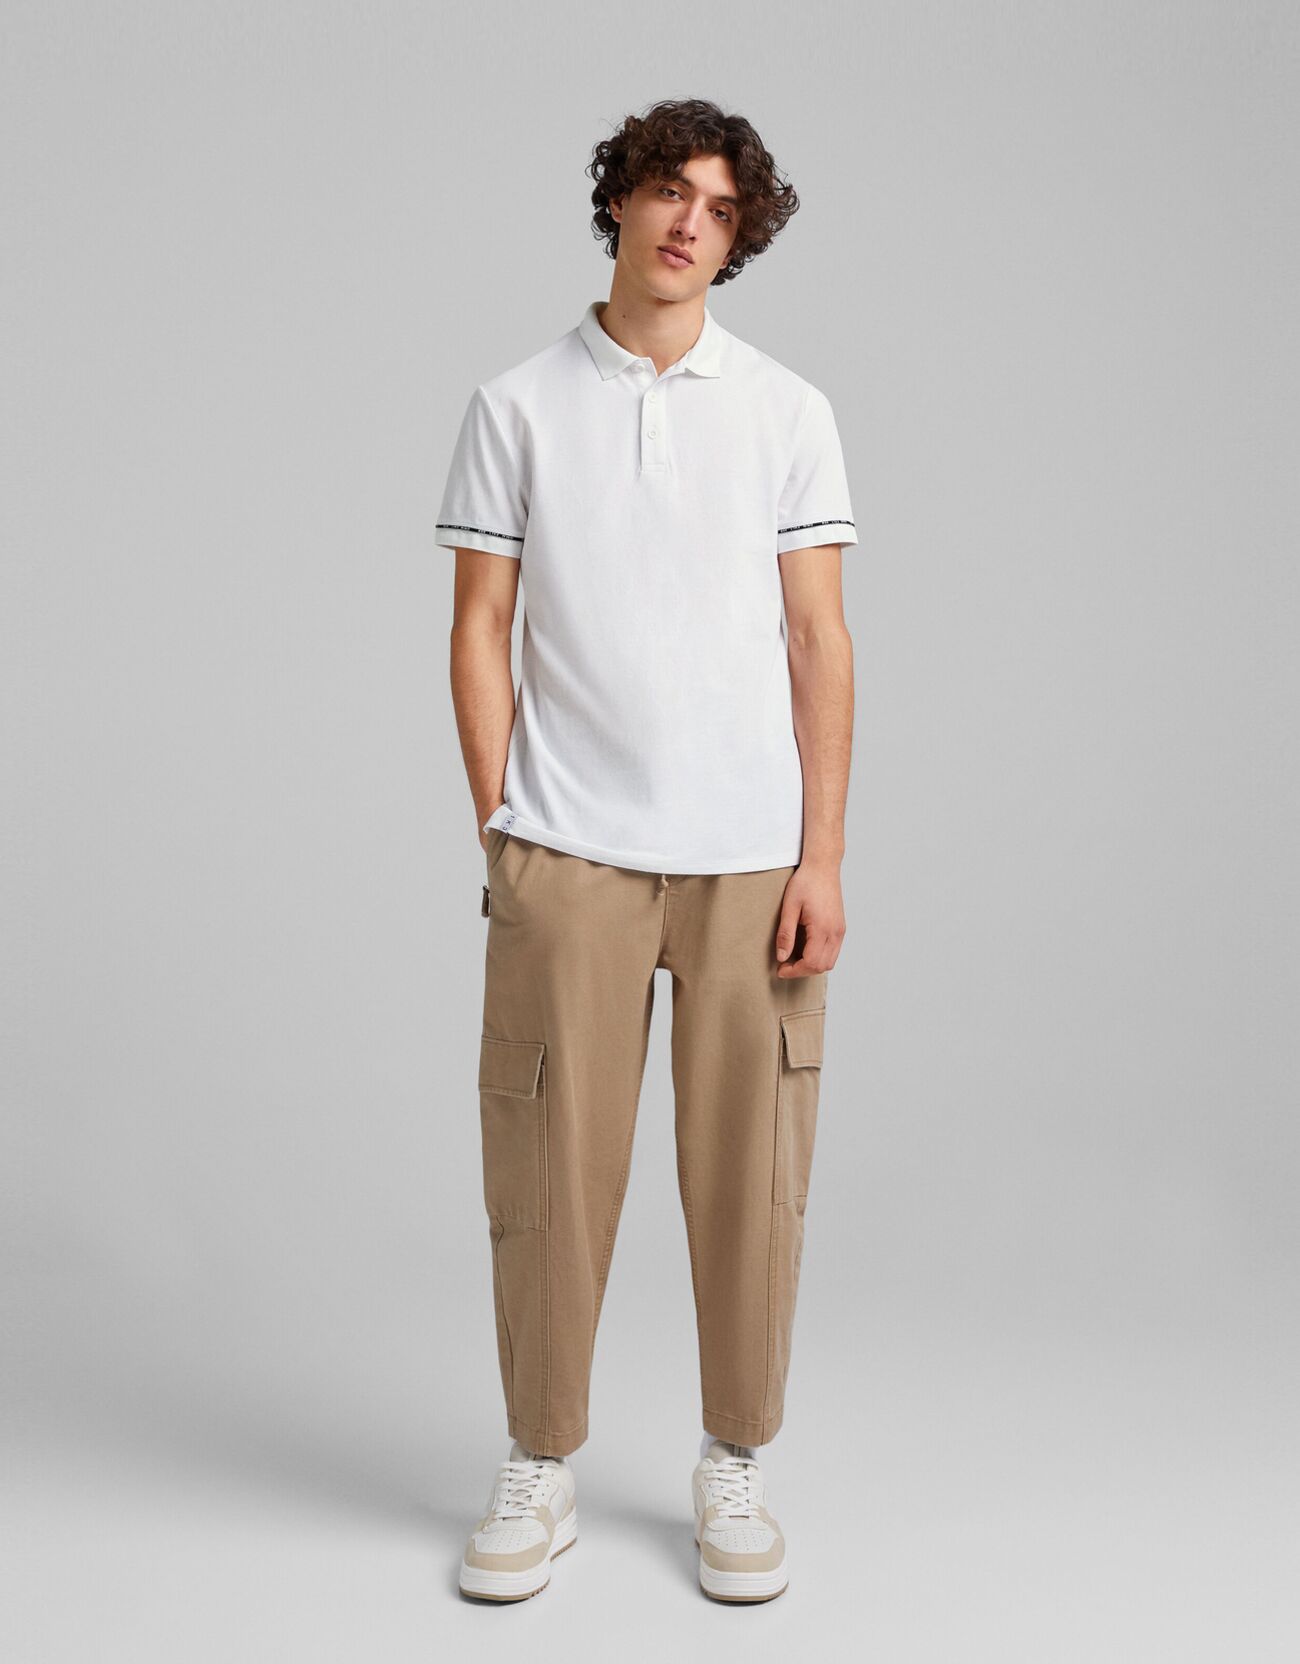 Bershka T-Shirt Polo Manches Courtes Piqué Homme Xl Blanc